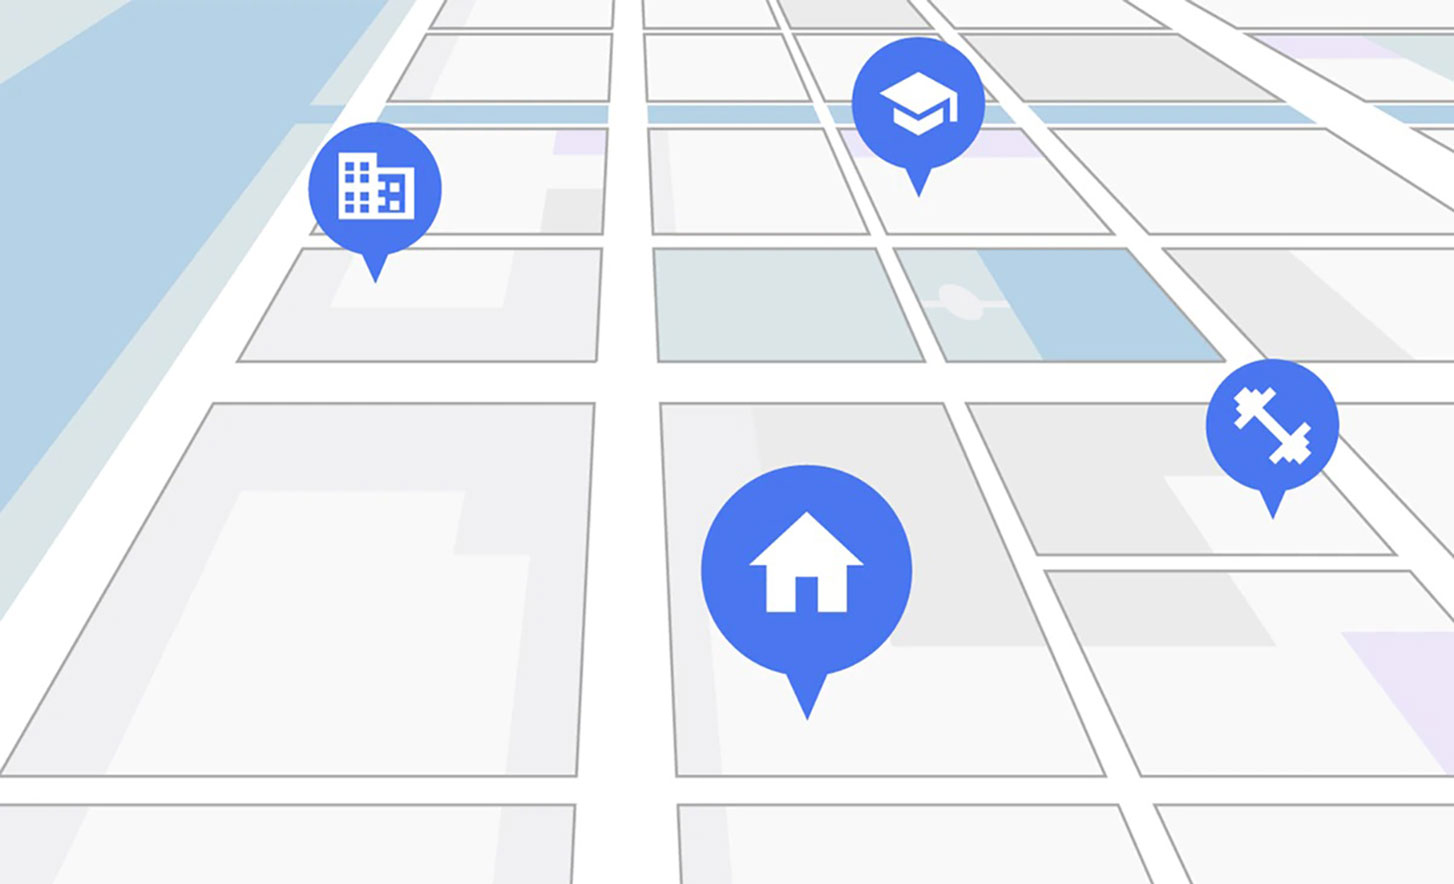 תמונה של מפה דיגיטלית עם סיכות בצבע כחול המייצגות את הבית, חדר הכושר, המשרד ובית הספר